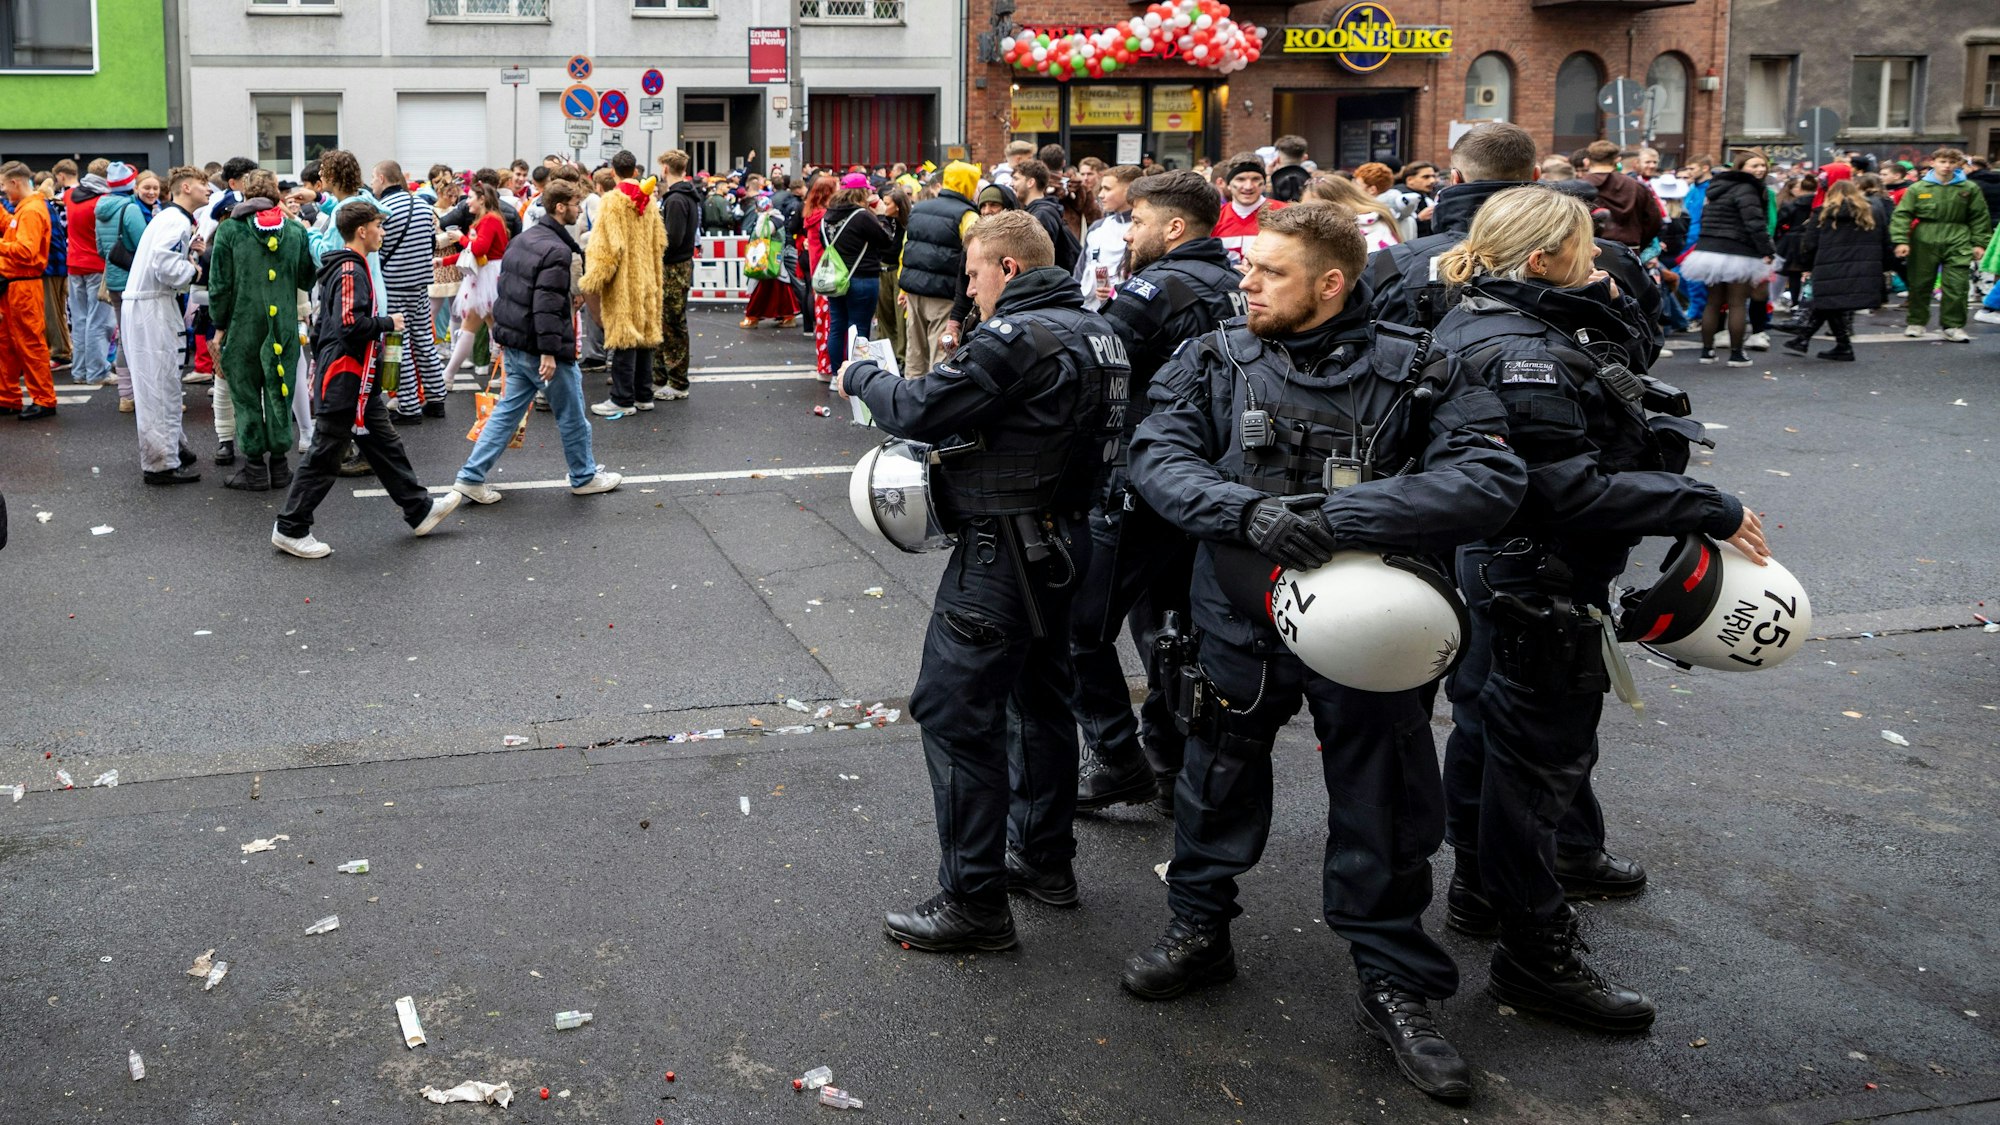 Polizeibeamte stehen auf der Zülpicher Straße, hinter ihnen laufen Kostümierte.